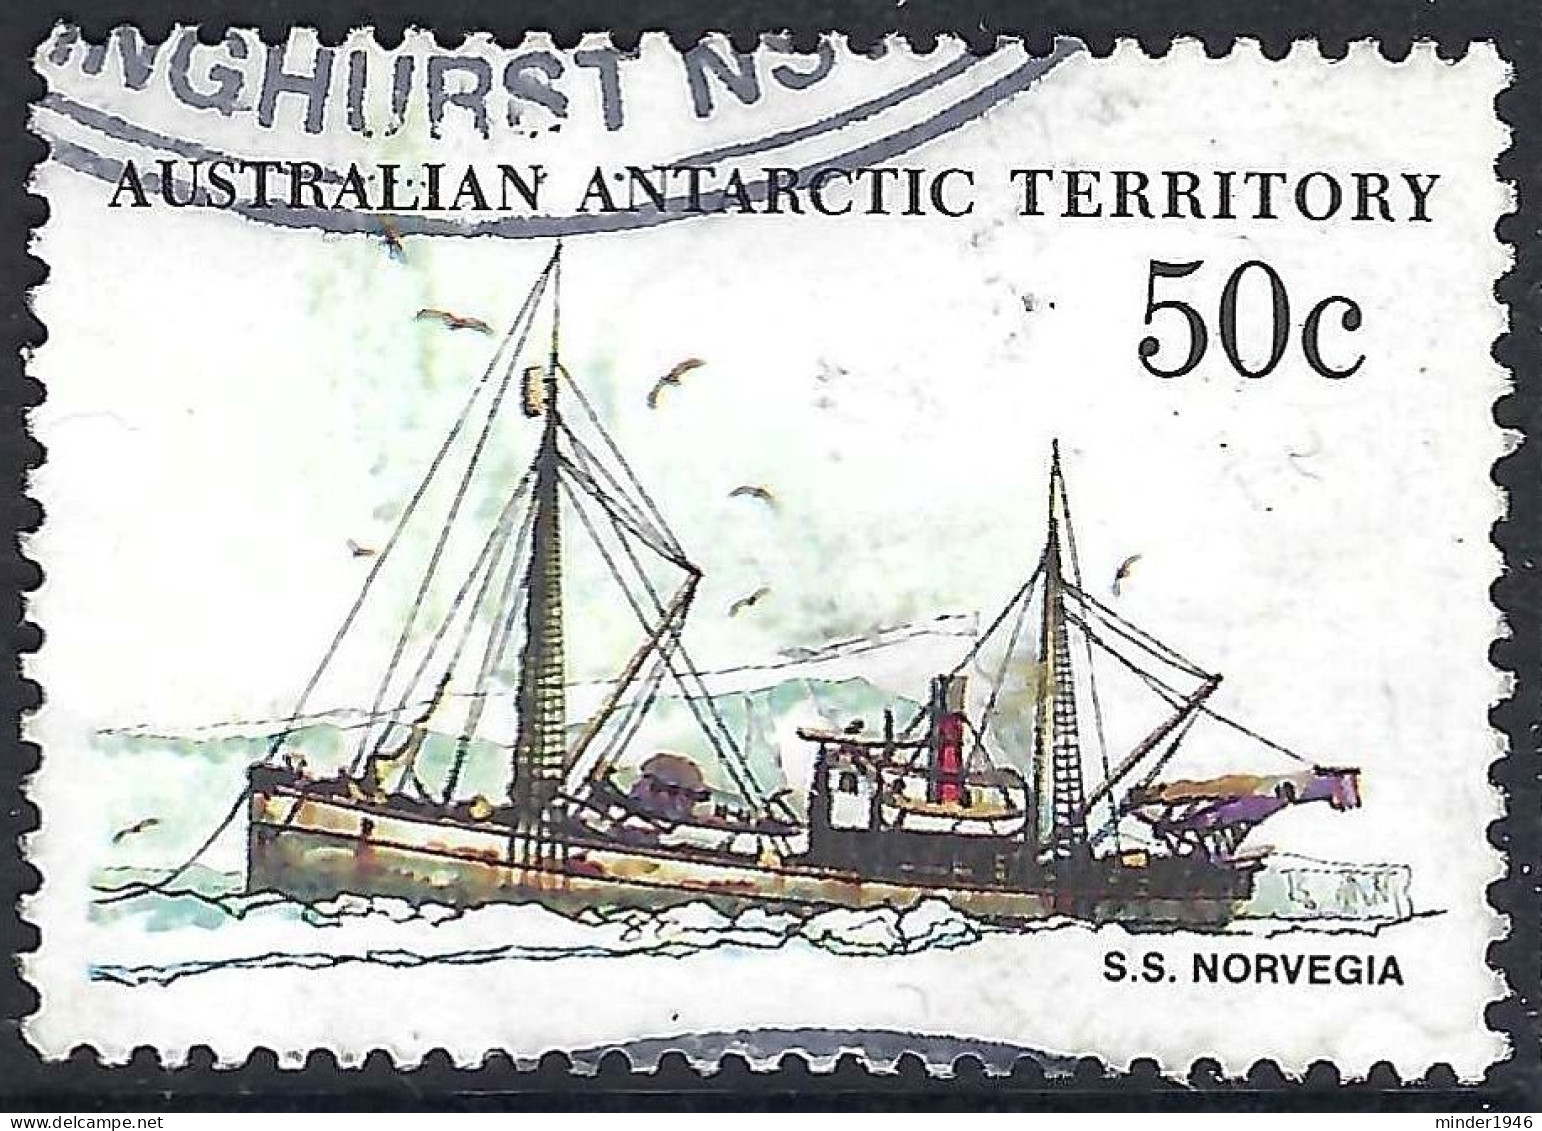 AUSTRALIAN ANTARCTIC TERRITORY (AAT) 1979 QEII 50c Multicoloured 'Ships, S.S Norvegia SG50 FU - Usados